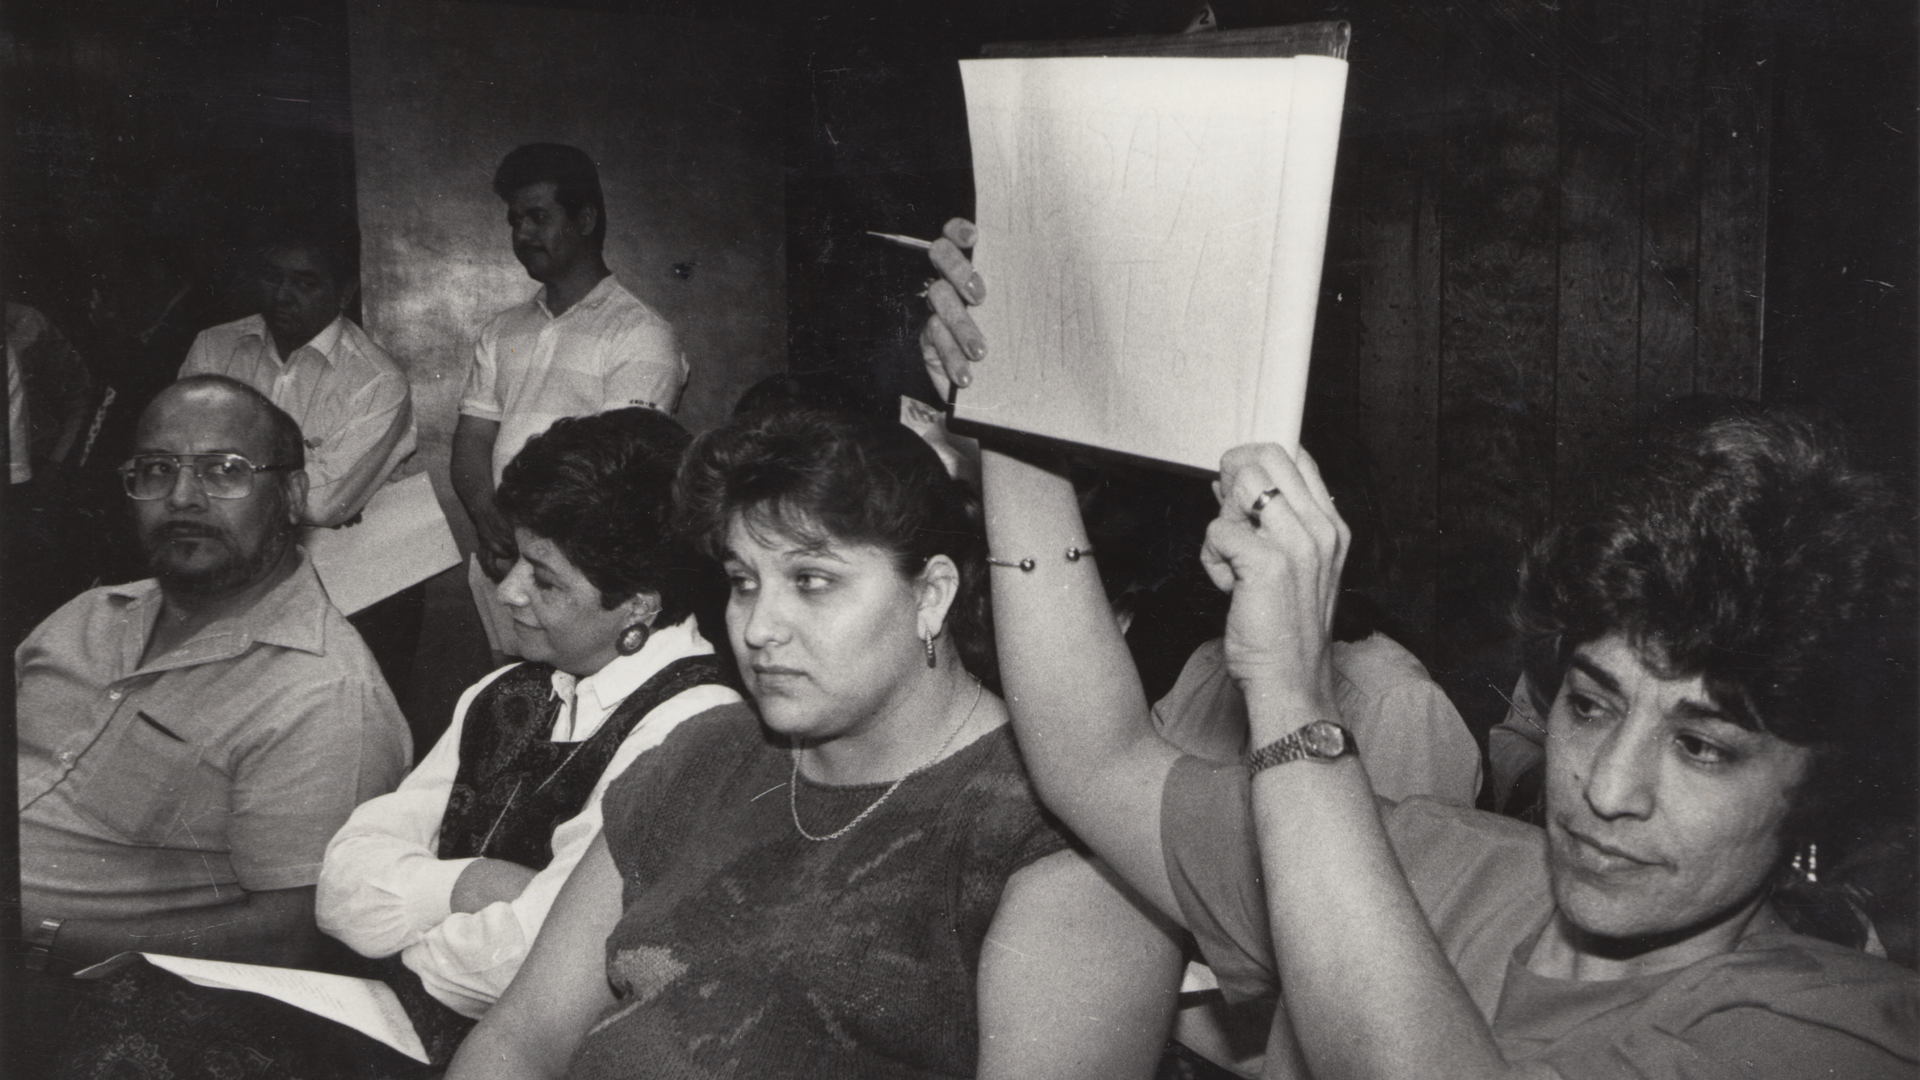 Uvalde resident Olga Muñoz Rodriquez protesting discrimination against Mexican Americans in 1970s. 